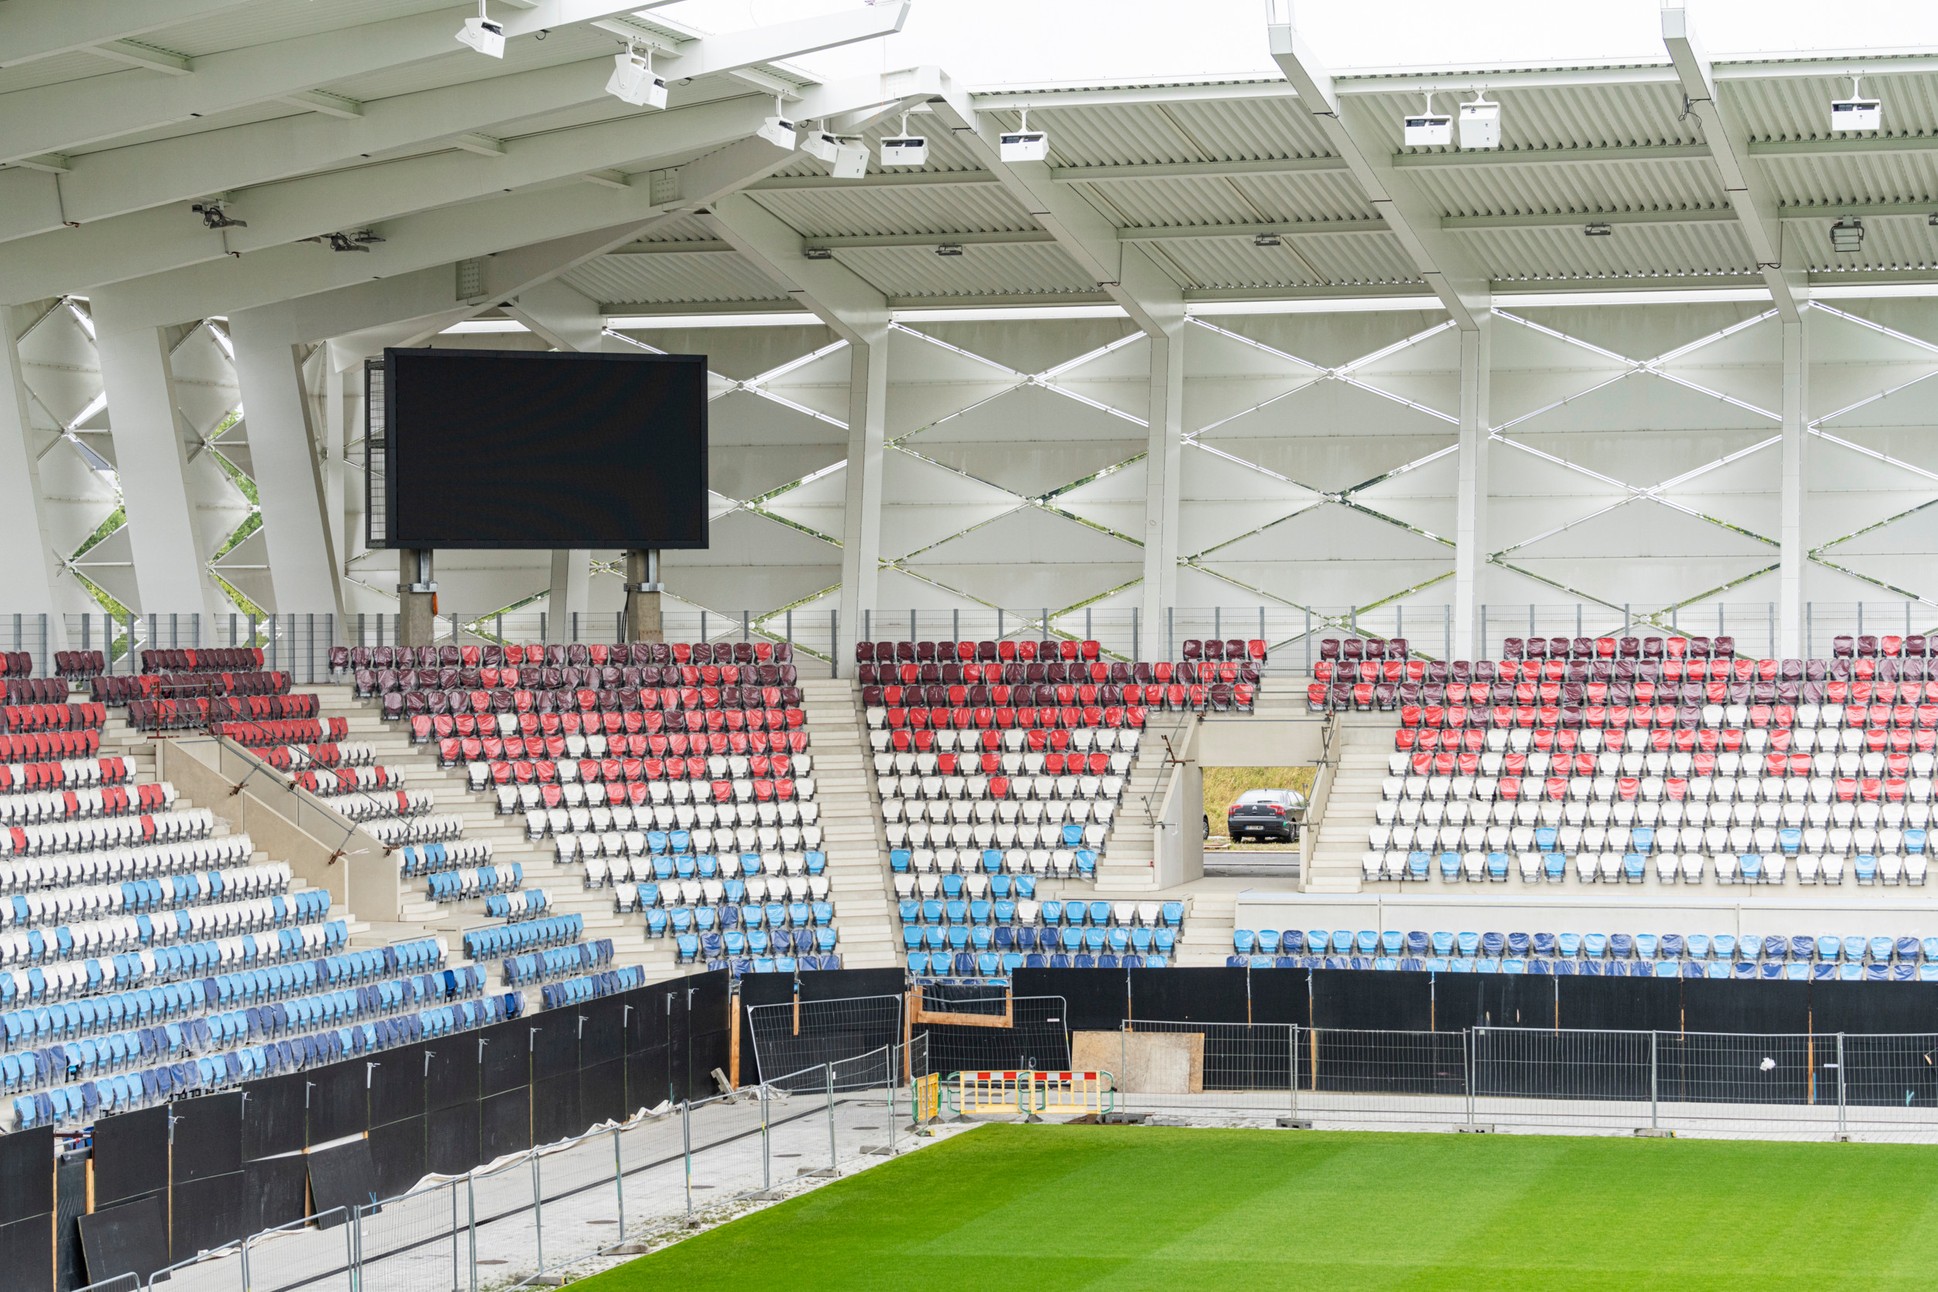 Le nouveau « Stade de Luxembourg », dispose de 9400 sièges Avatar.